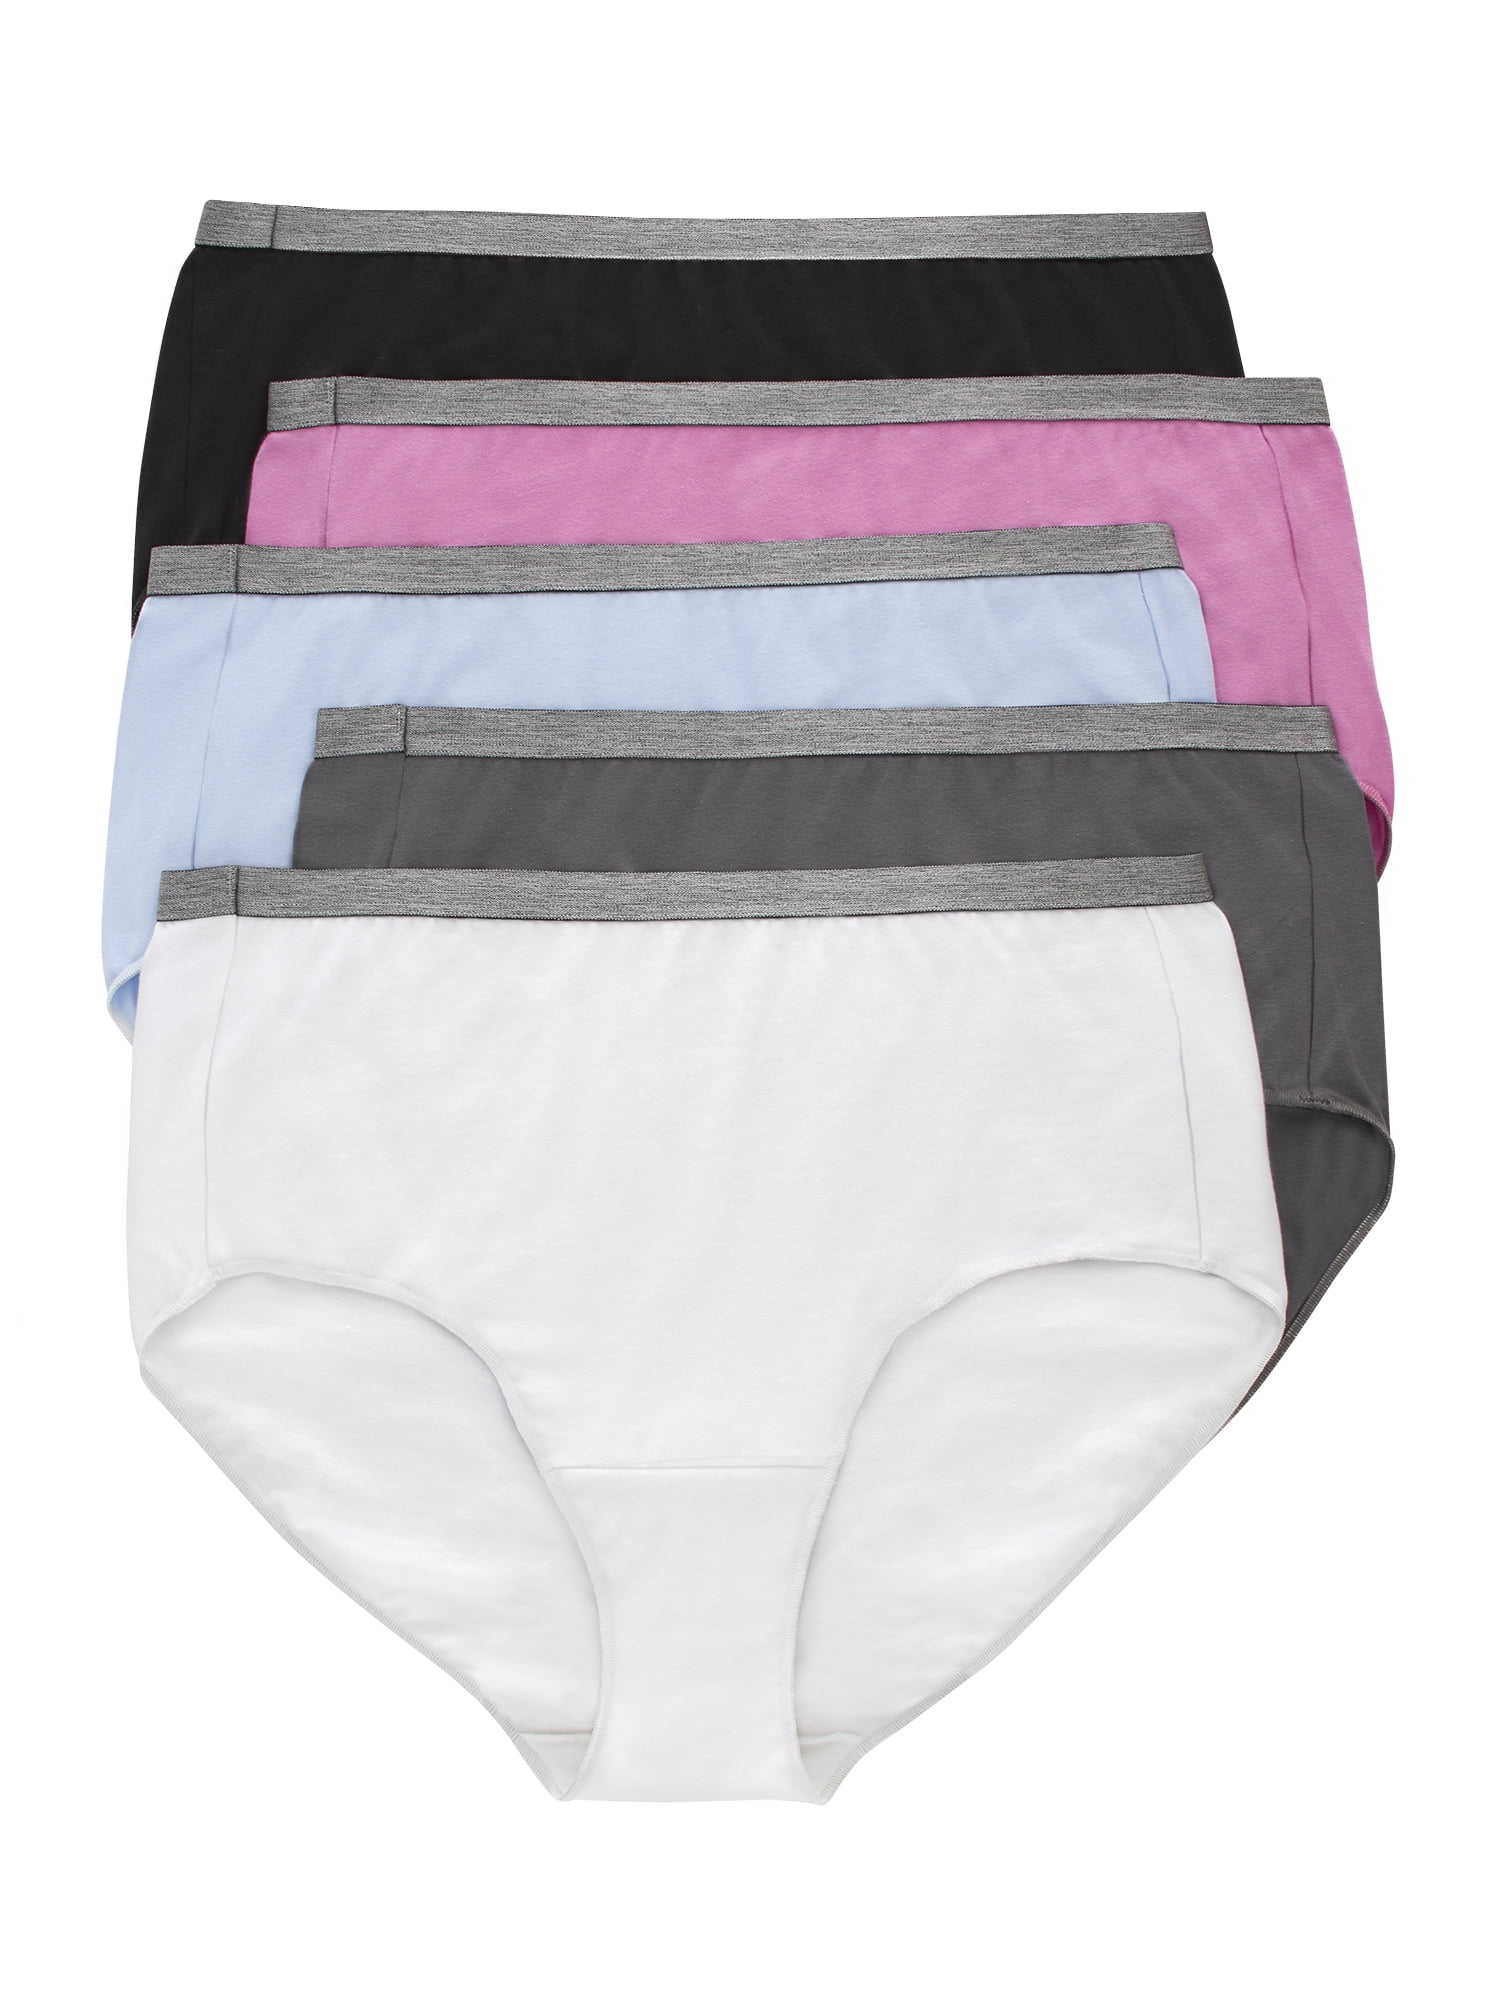 Hanes Just My Size Women's Stretch Brief Underwear, 5-Pack - Walmart.com